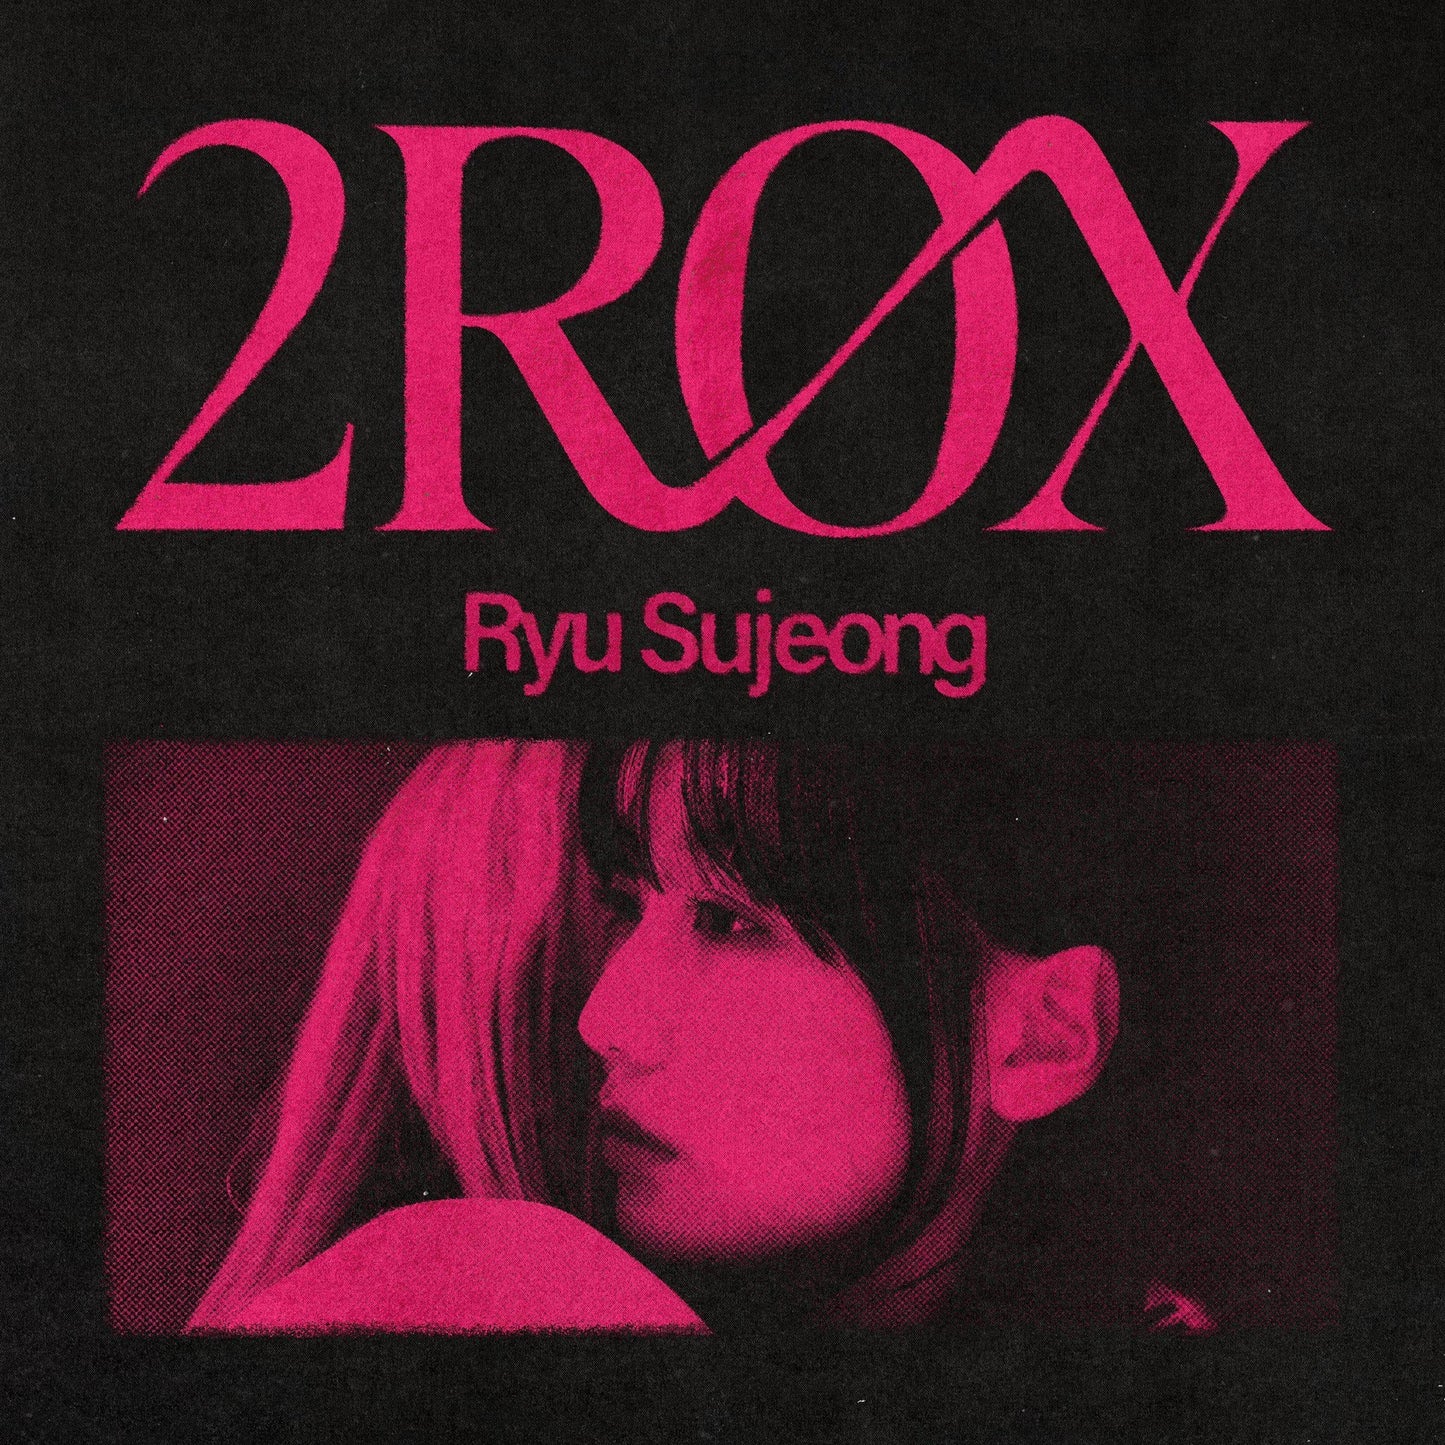 Ryu Sujeong • 2ROX